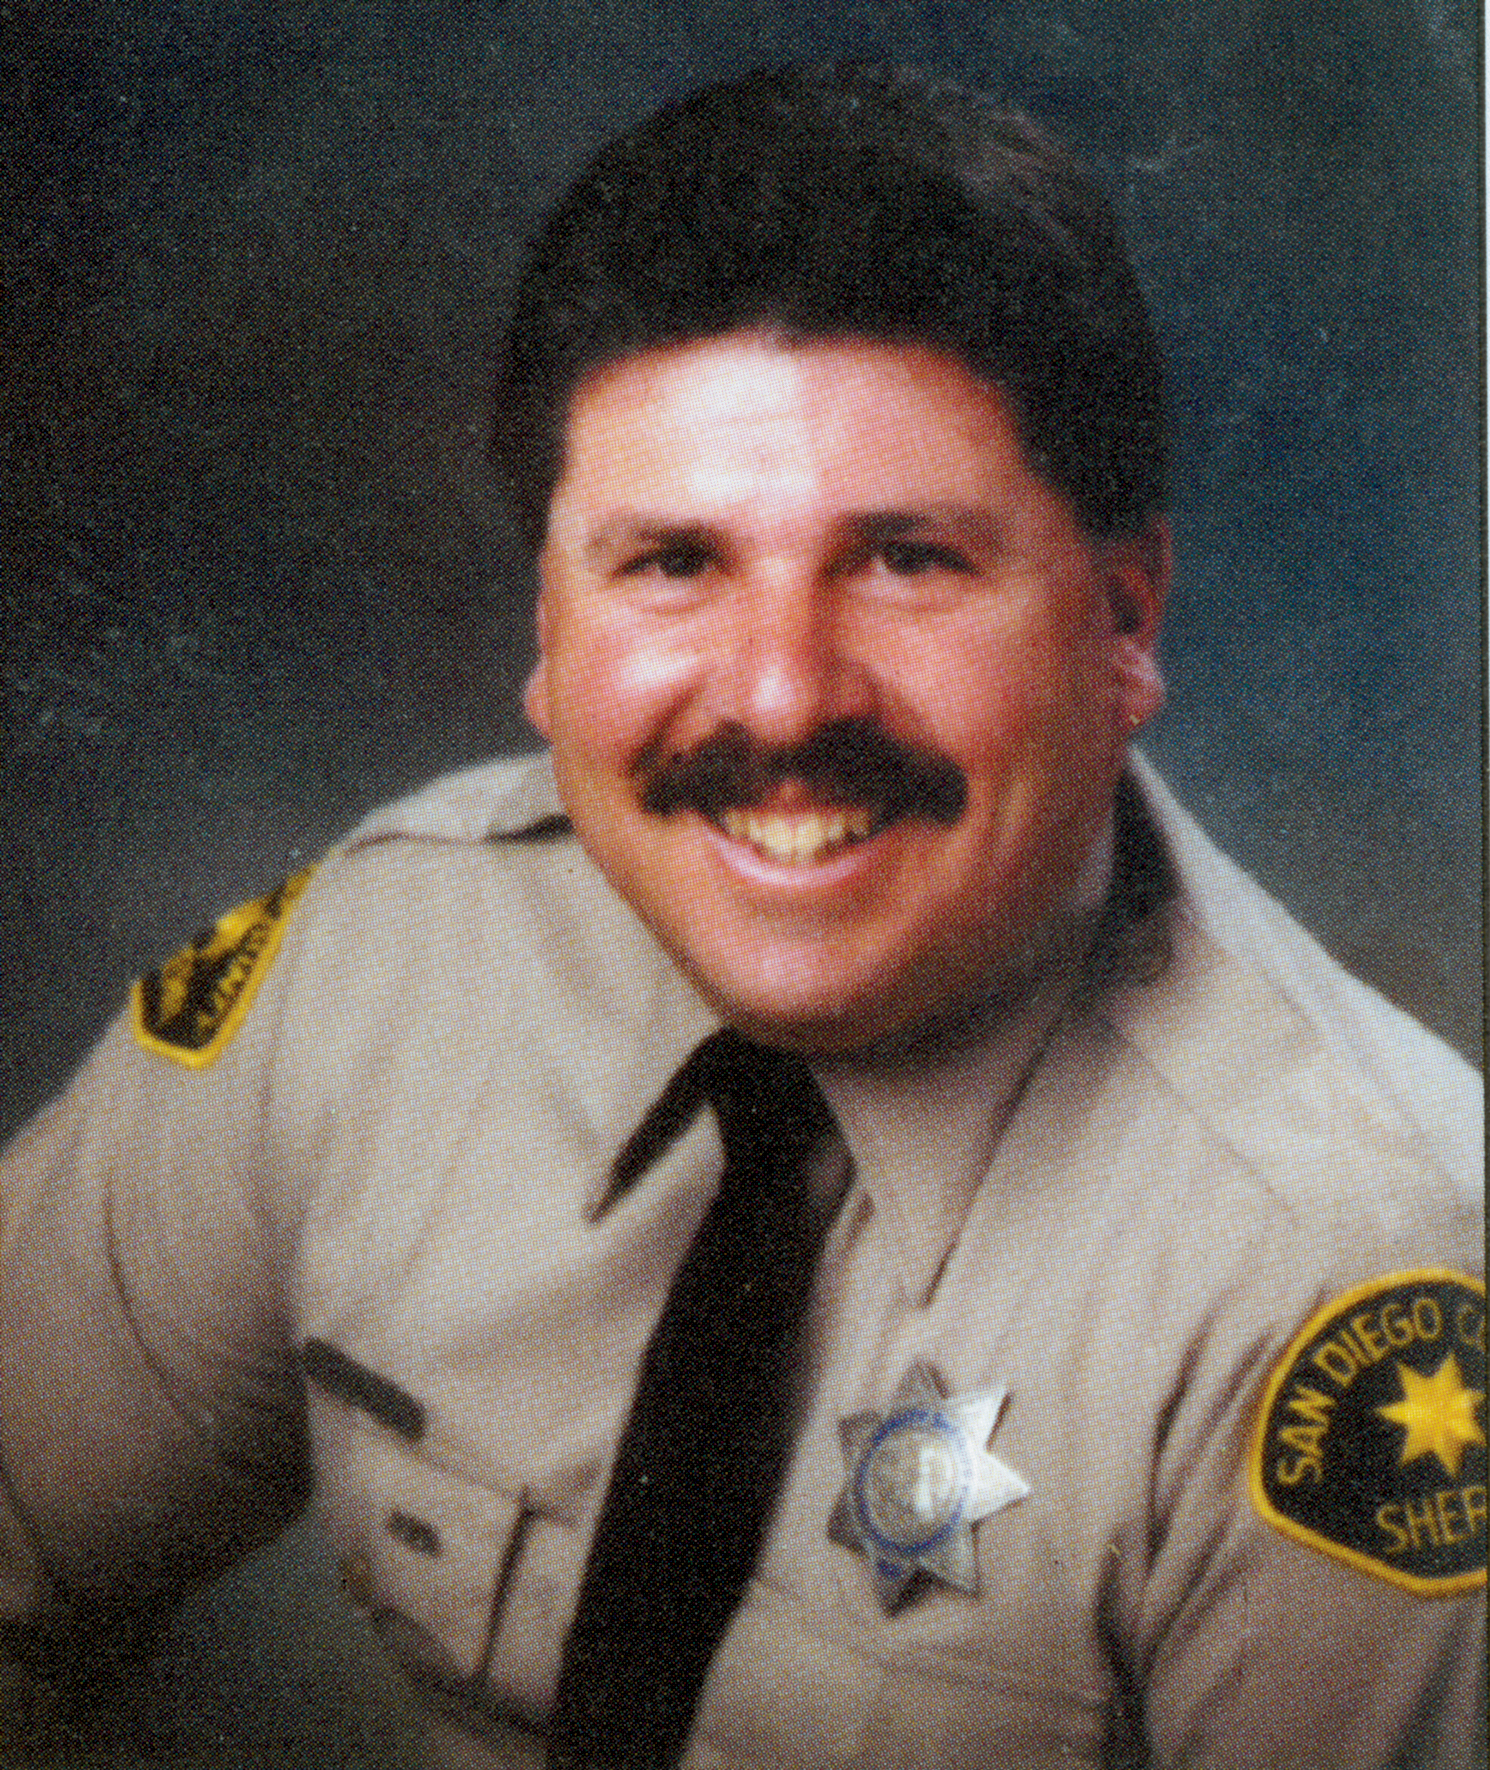 Deputy Patrick Steven Coyle